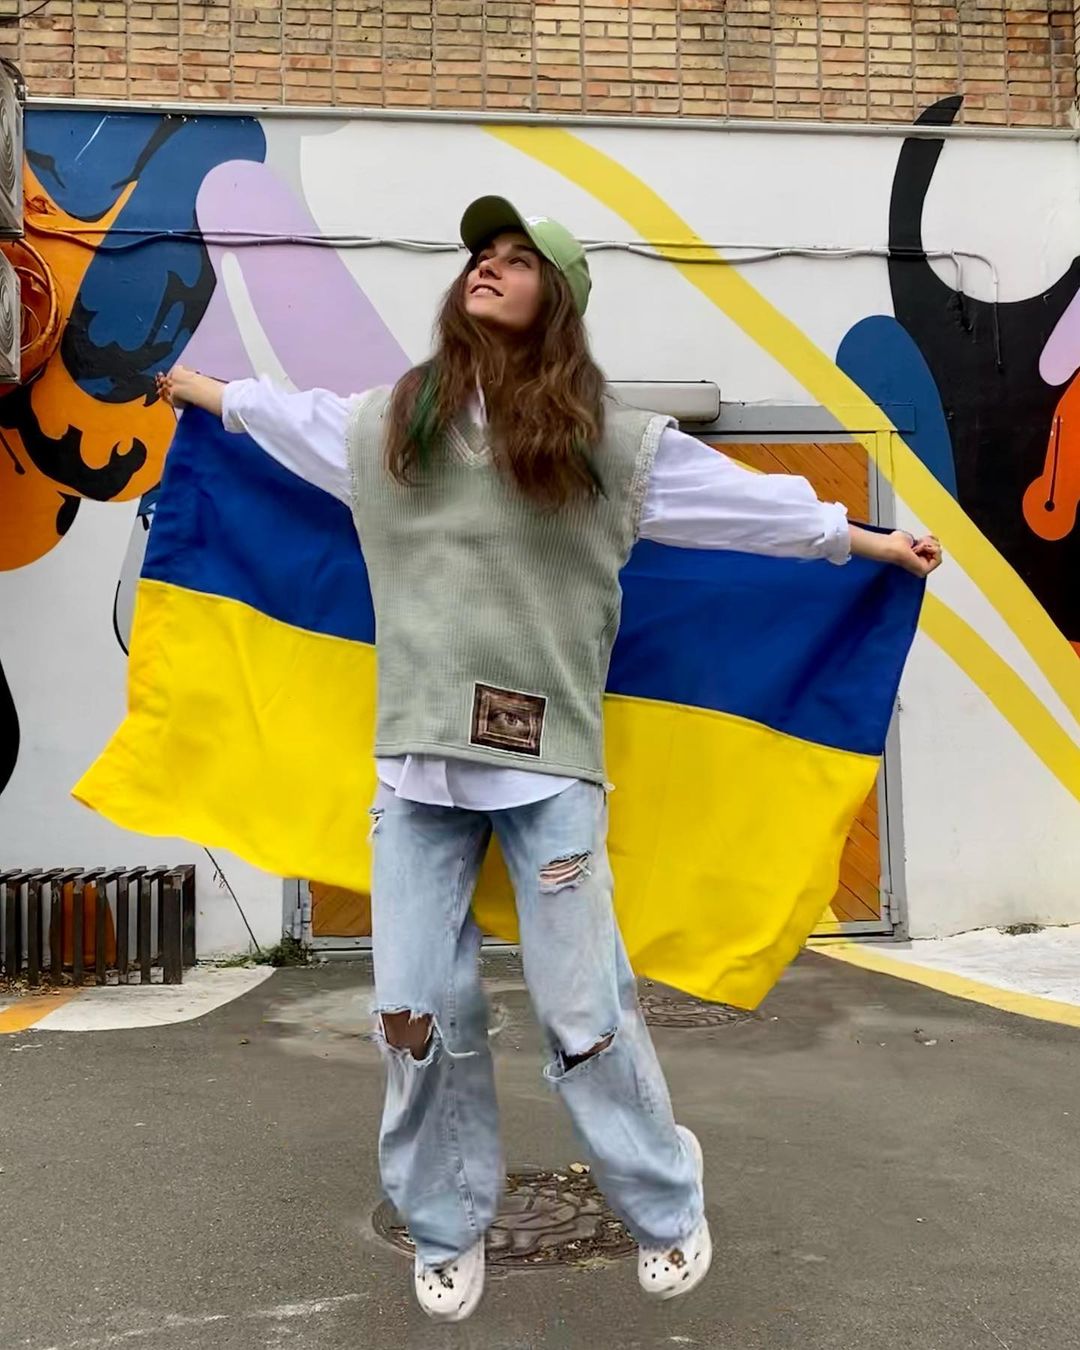 «Если ты говоришь об Украине – ты видишь сочувствие, но это уже давно не резкая реакция», – говорит певица о настроениях в Европе. Фото: Instagram.com/thejerryheil/